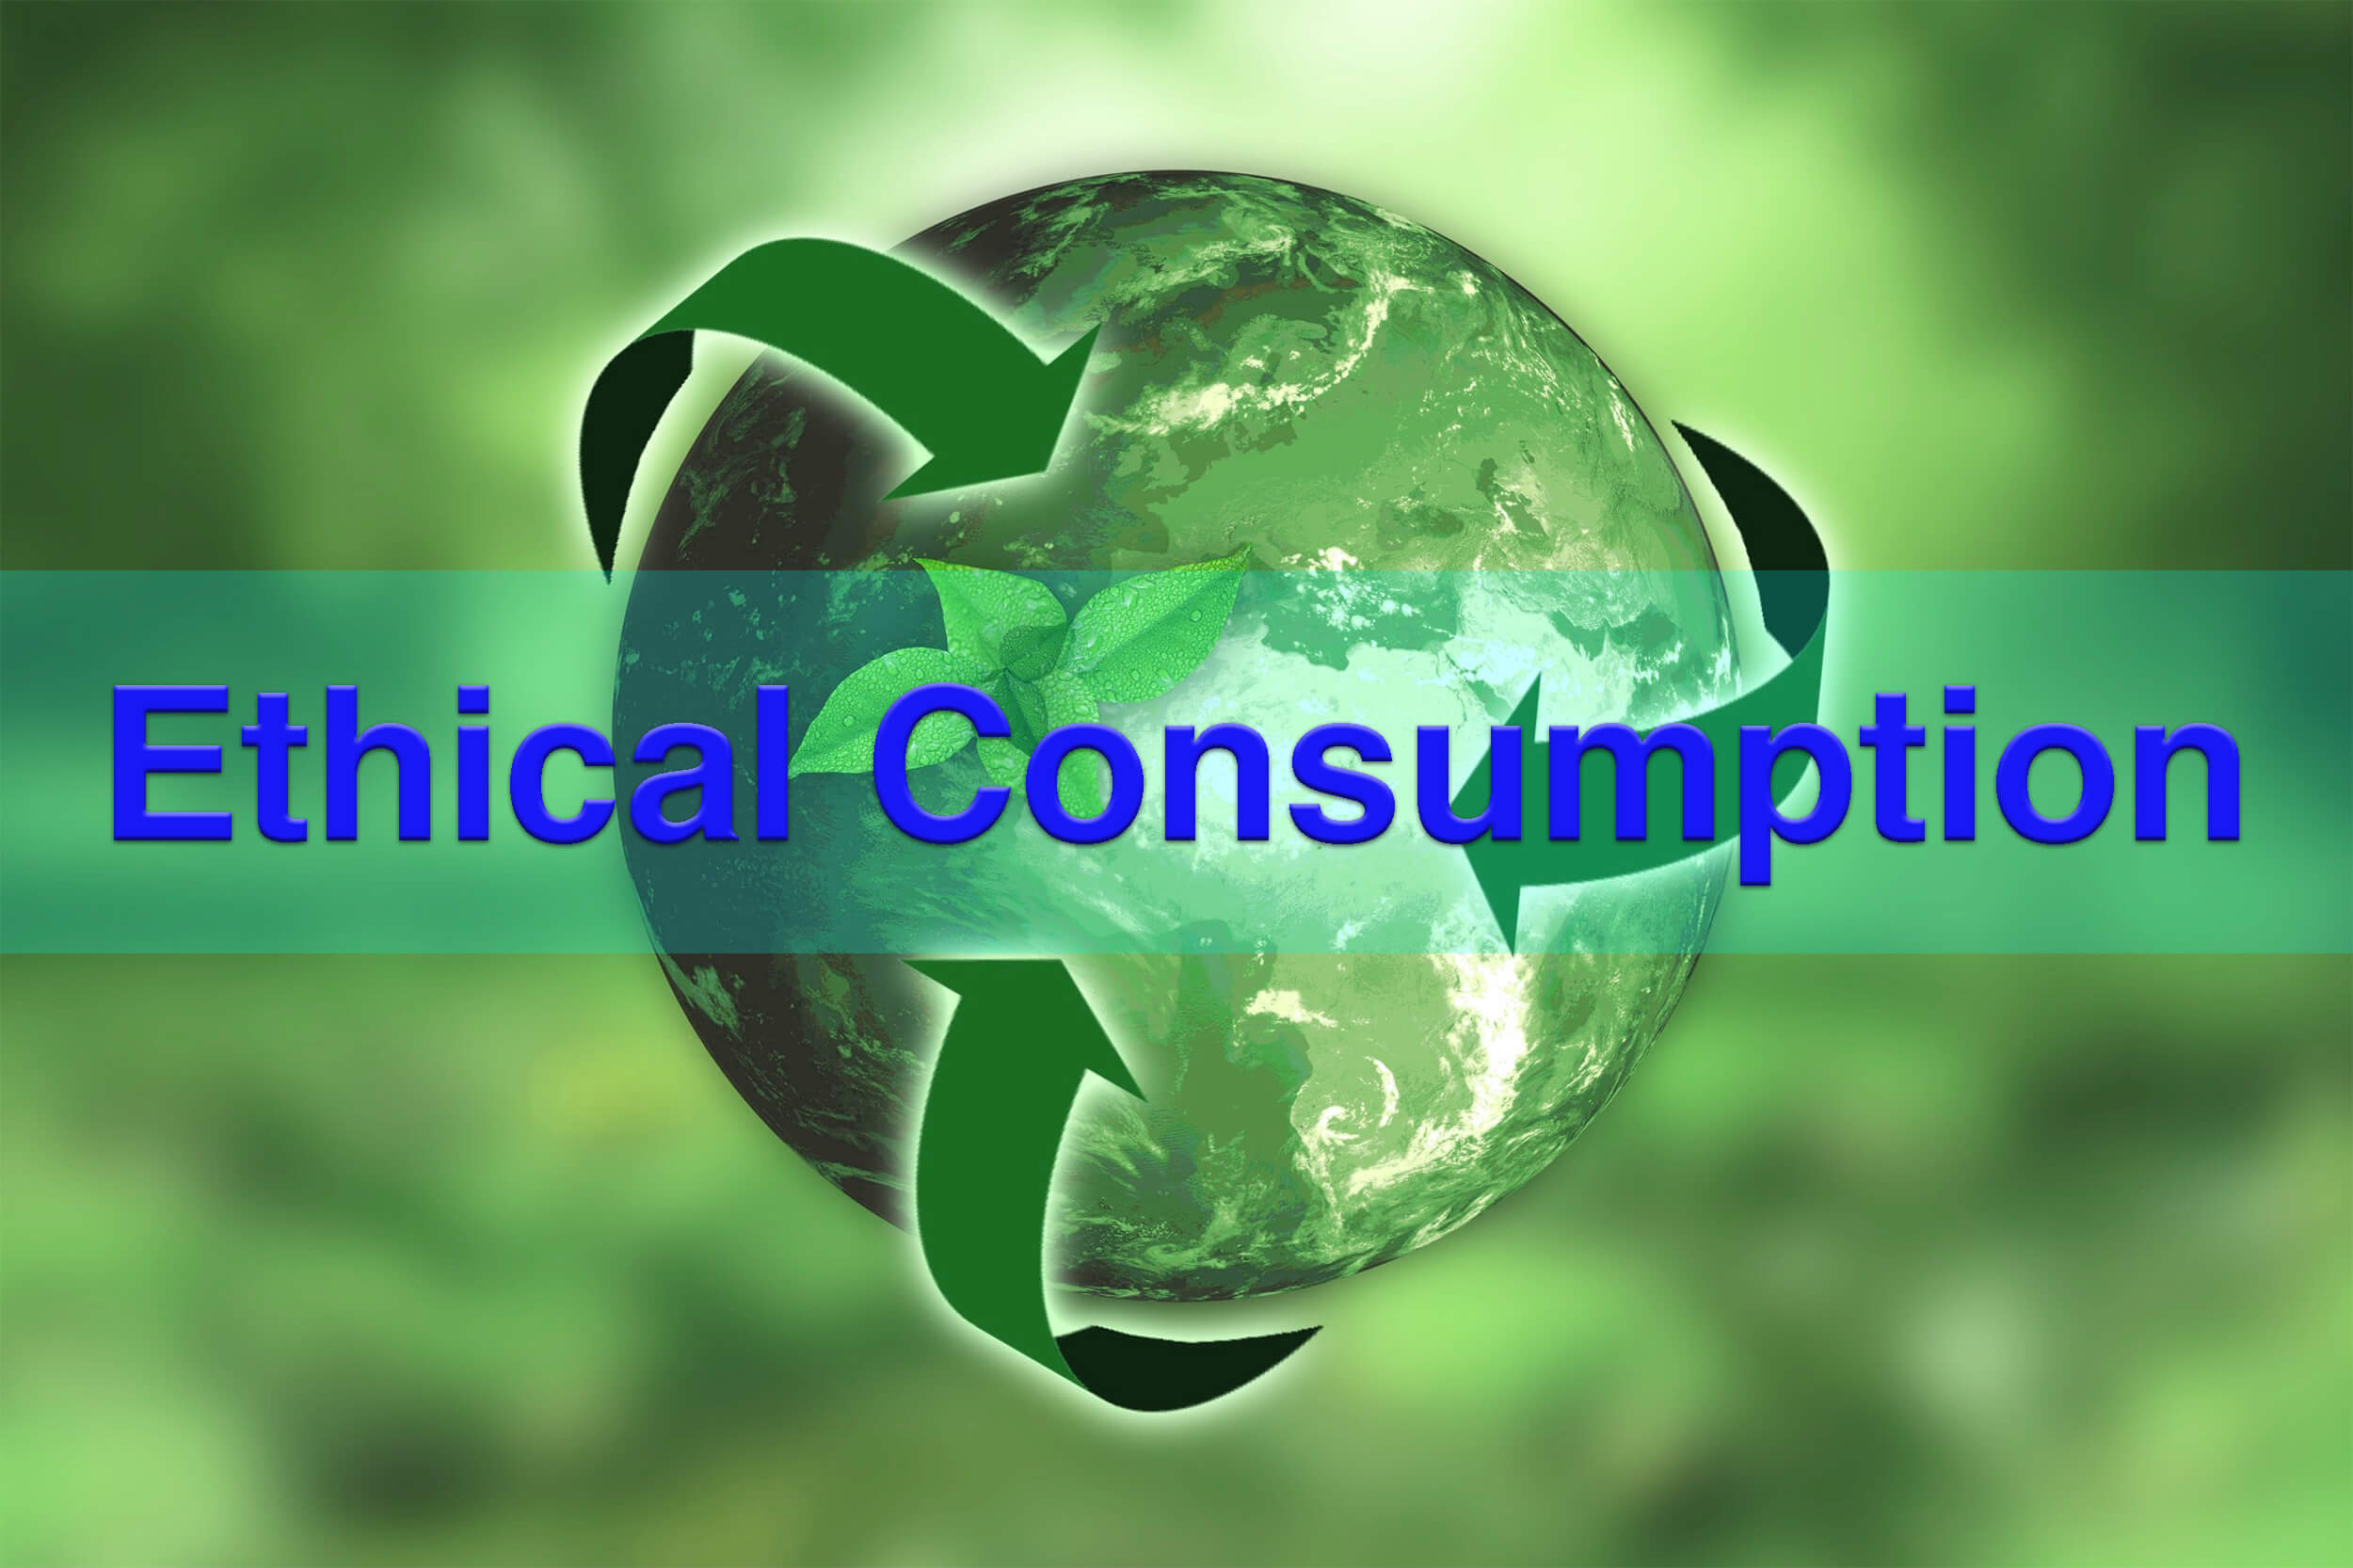 エシカル消費の基礎知識 | SDGs・CSR・ESG消費との親和性と企業事例